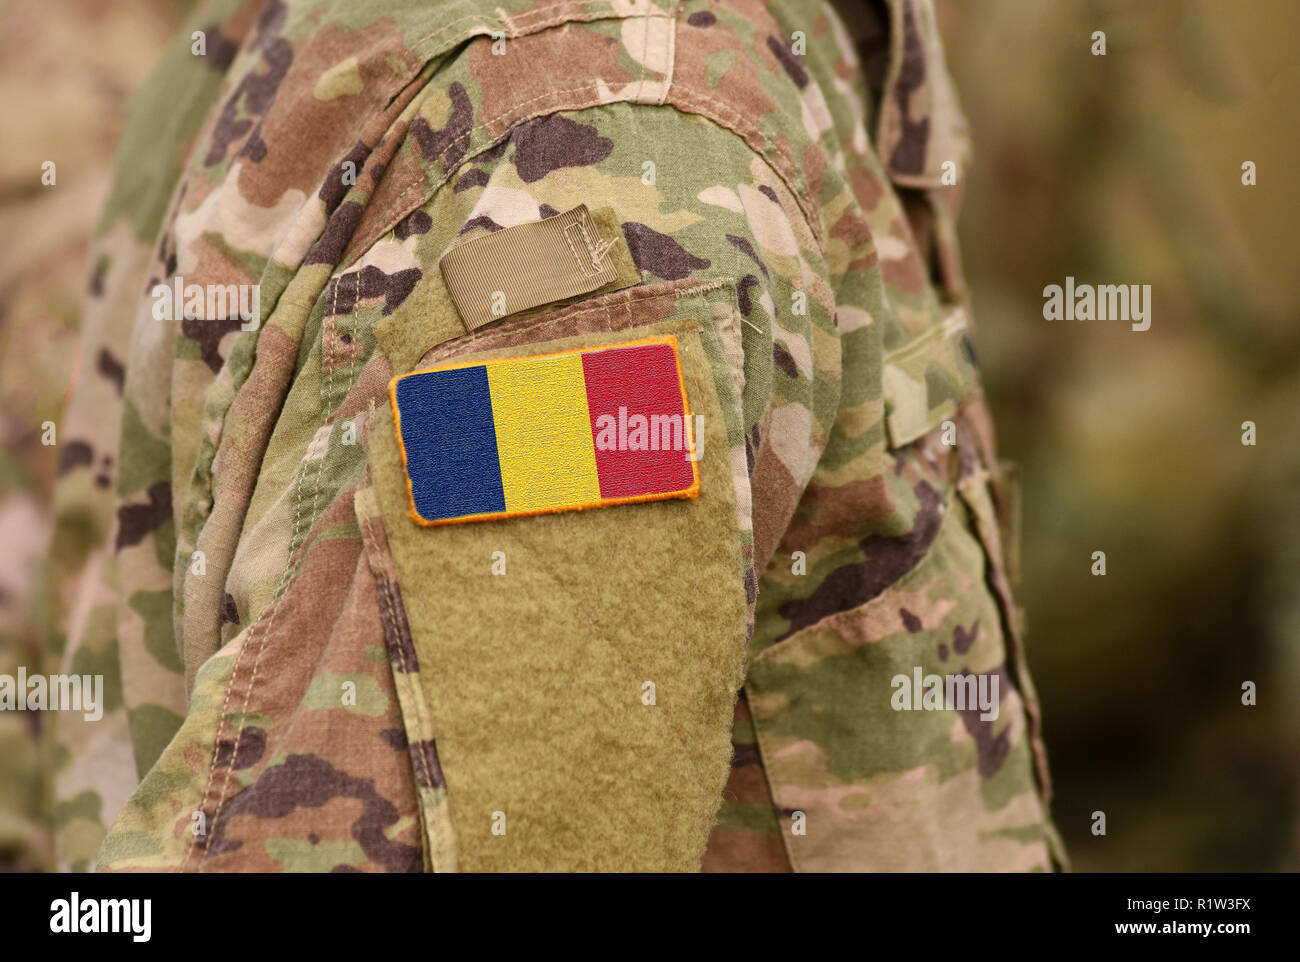 Flagge auf Soldaten arm Tschad. Republik Tschad Truppen (Collage) Stockfoto